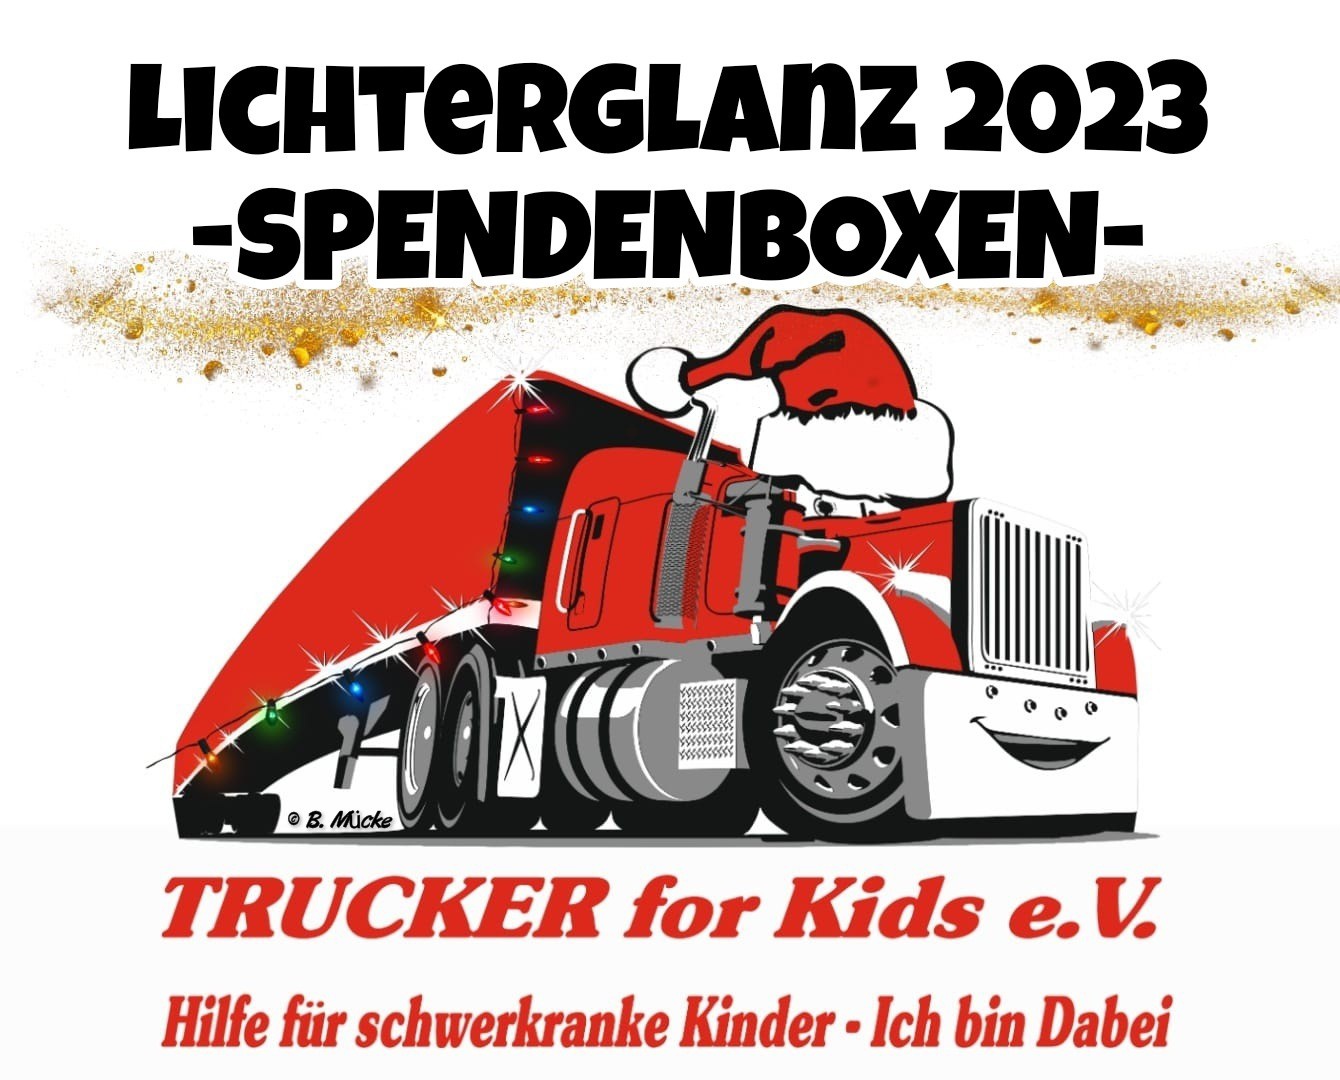 Spendenboxen Lichterglanz 2023